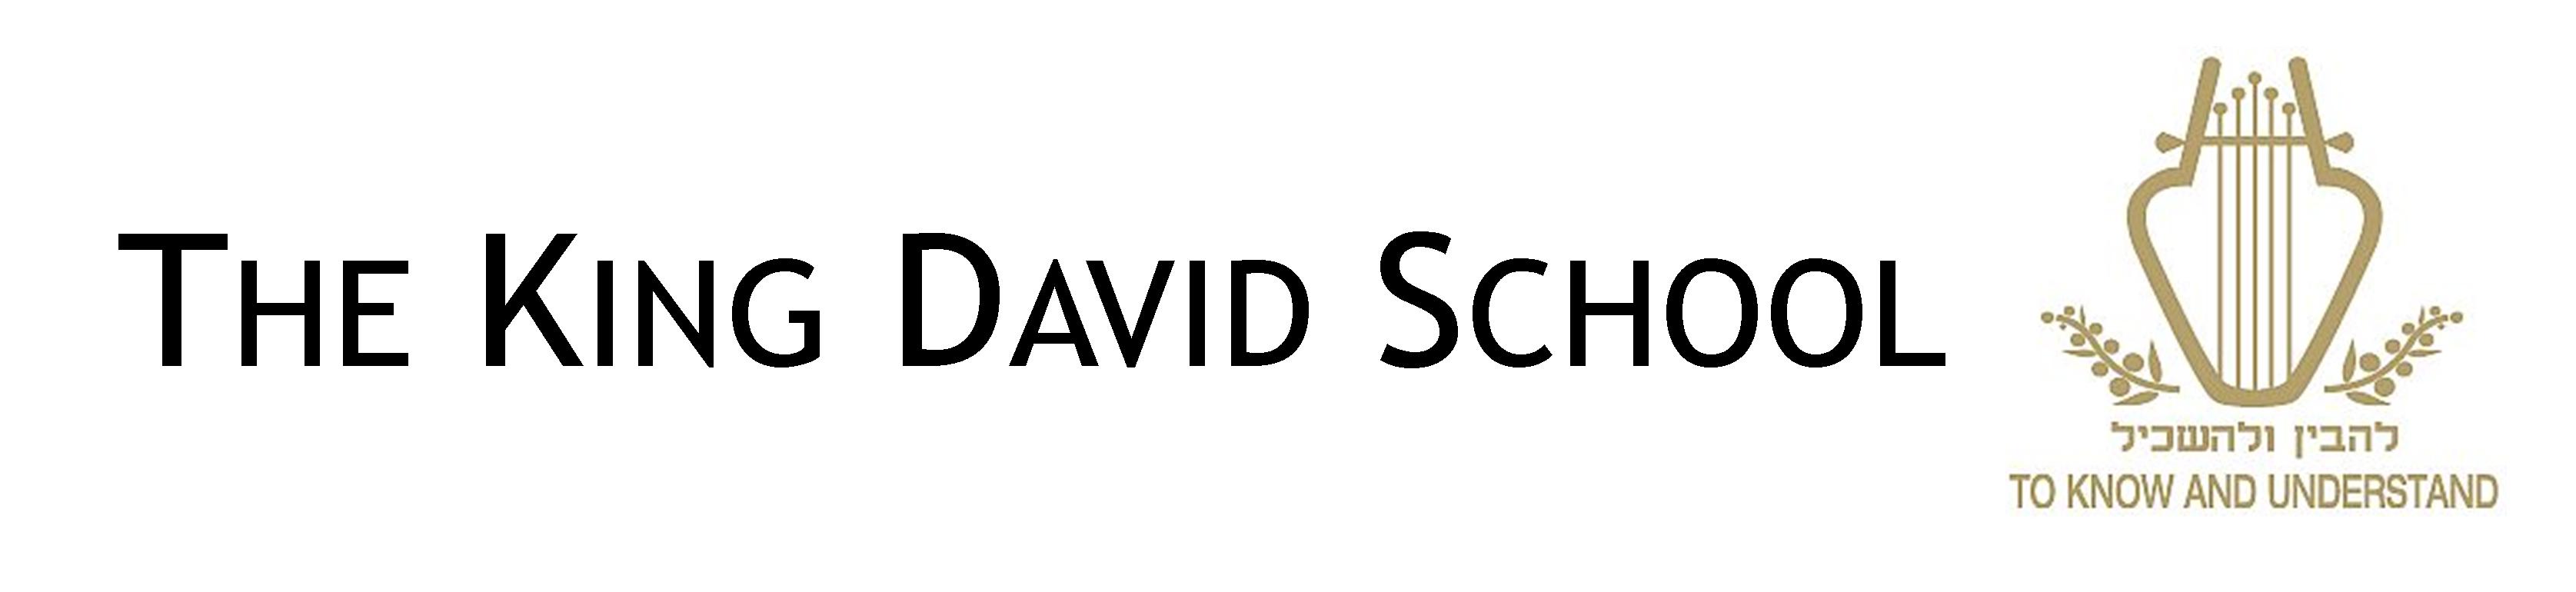 The King David School logo